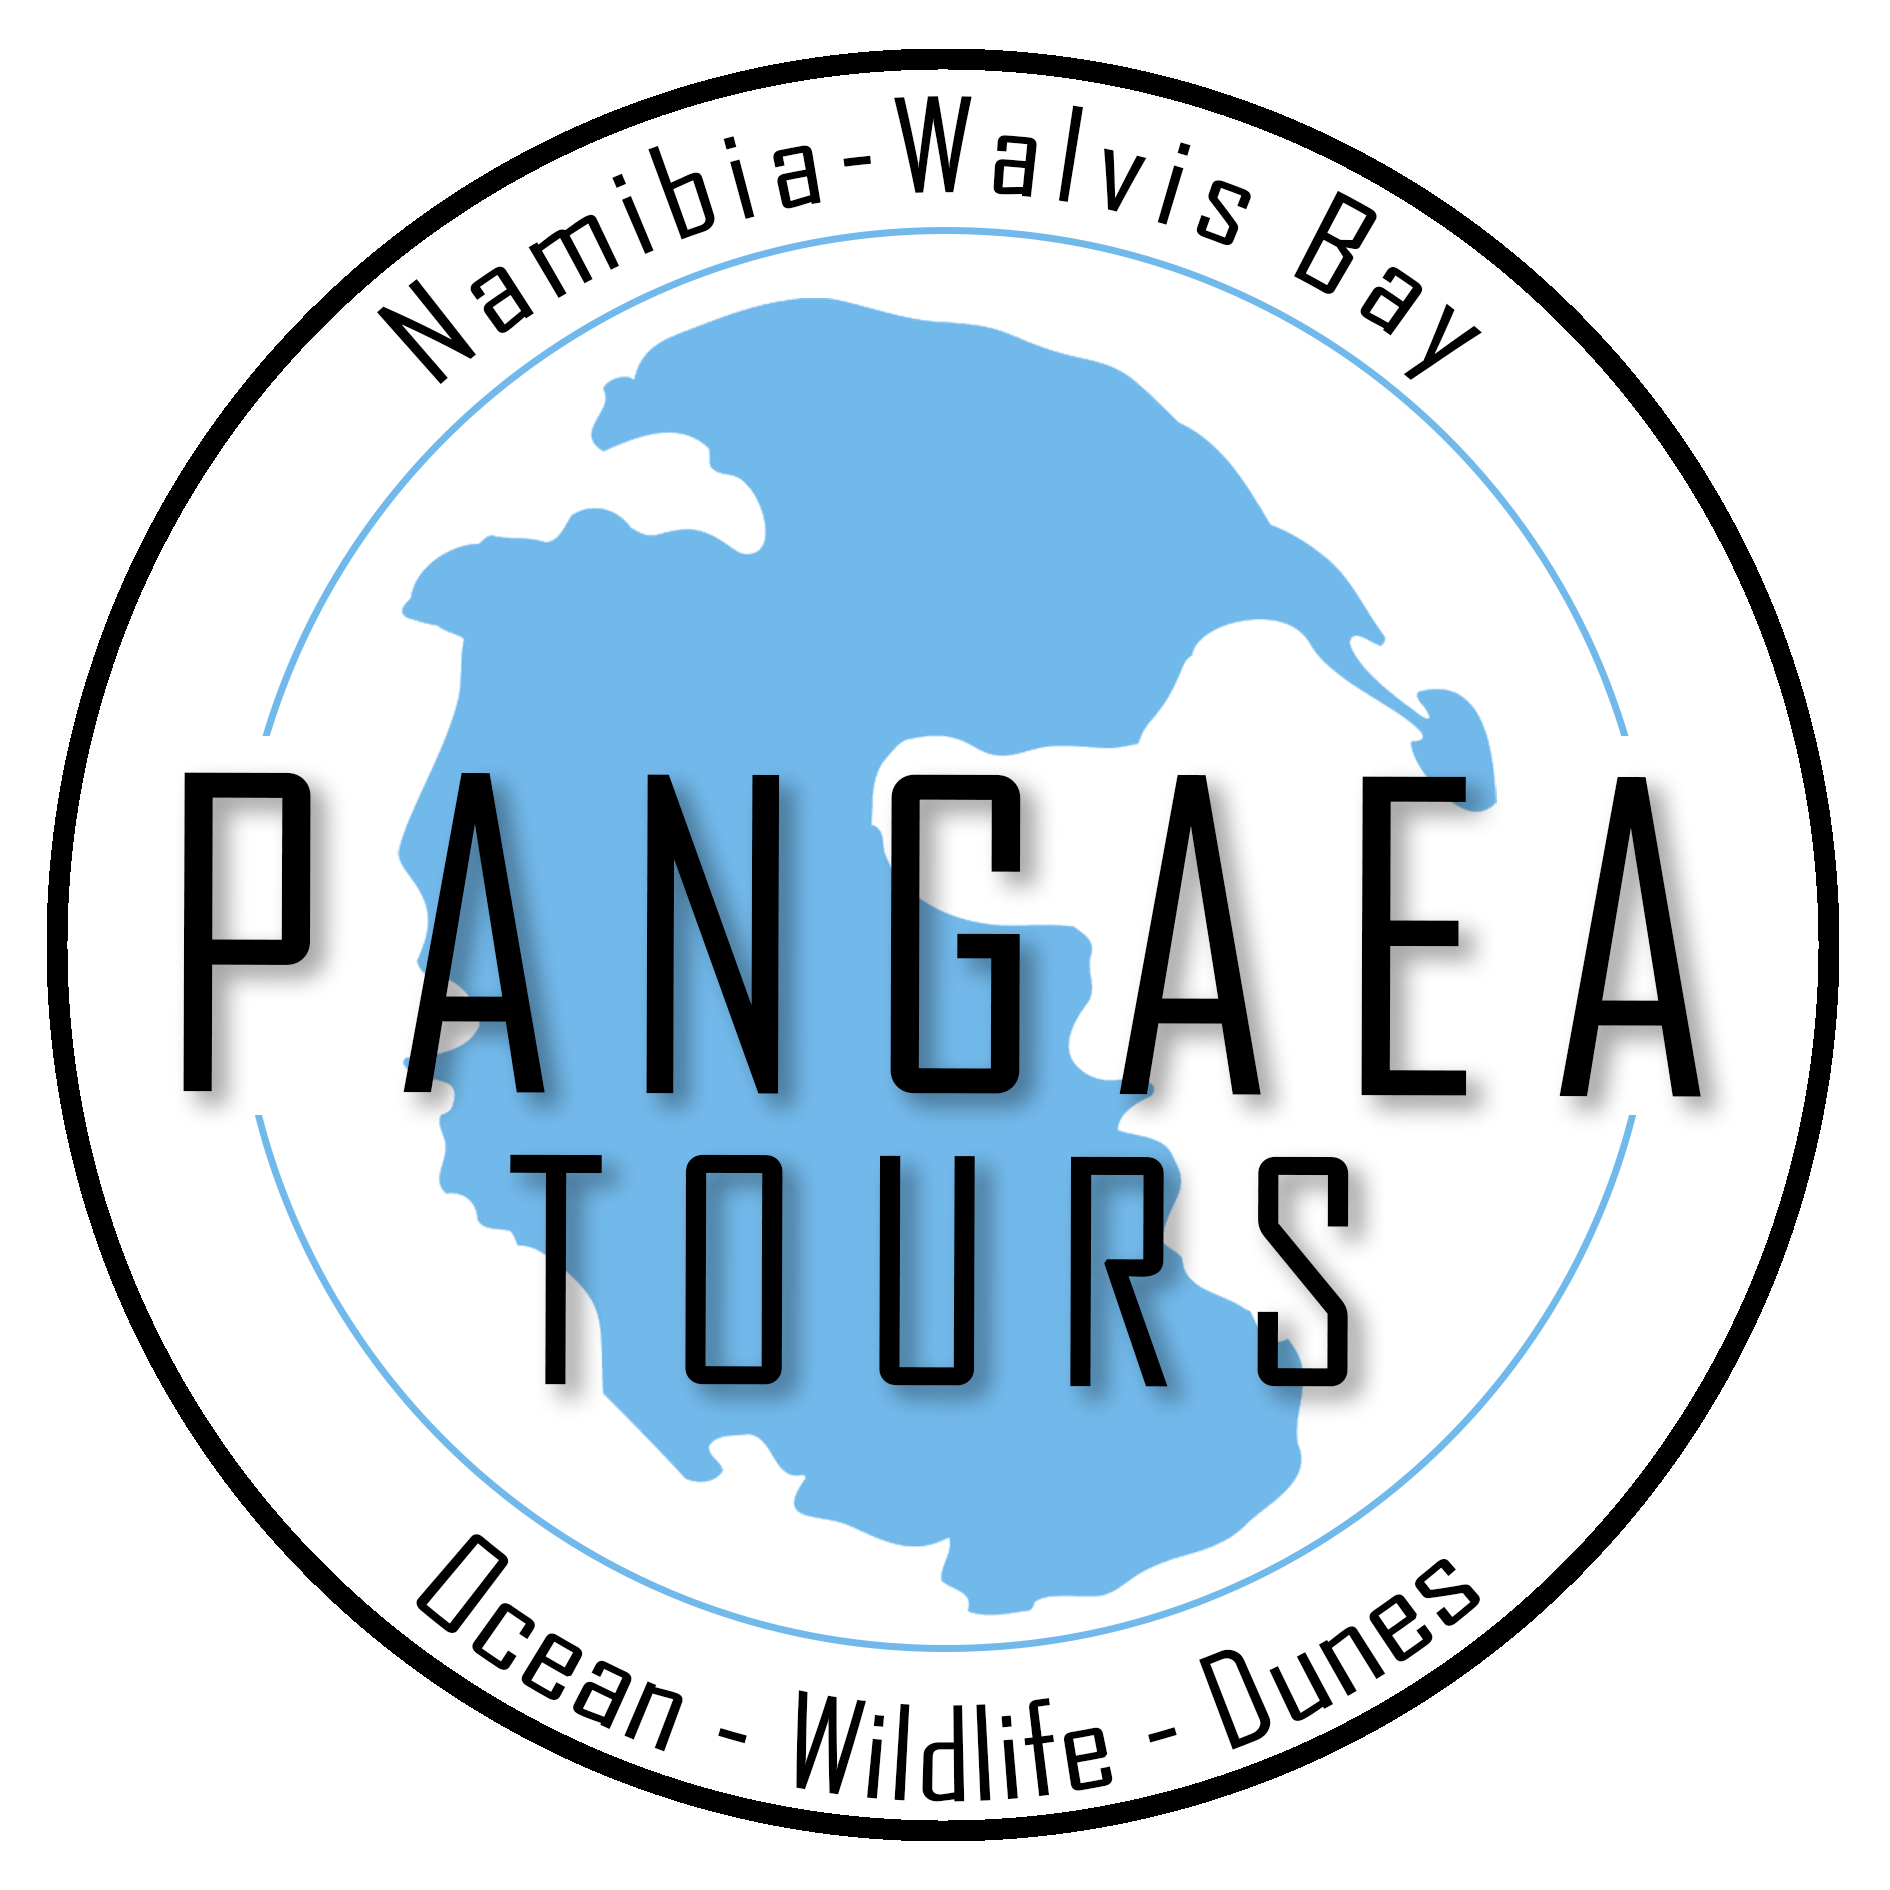 Pangaea tours